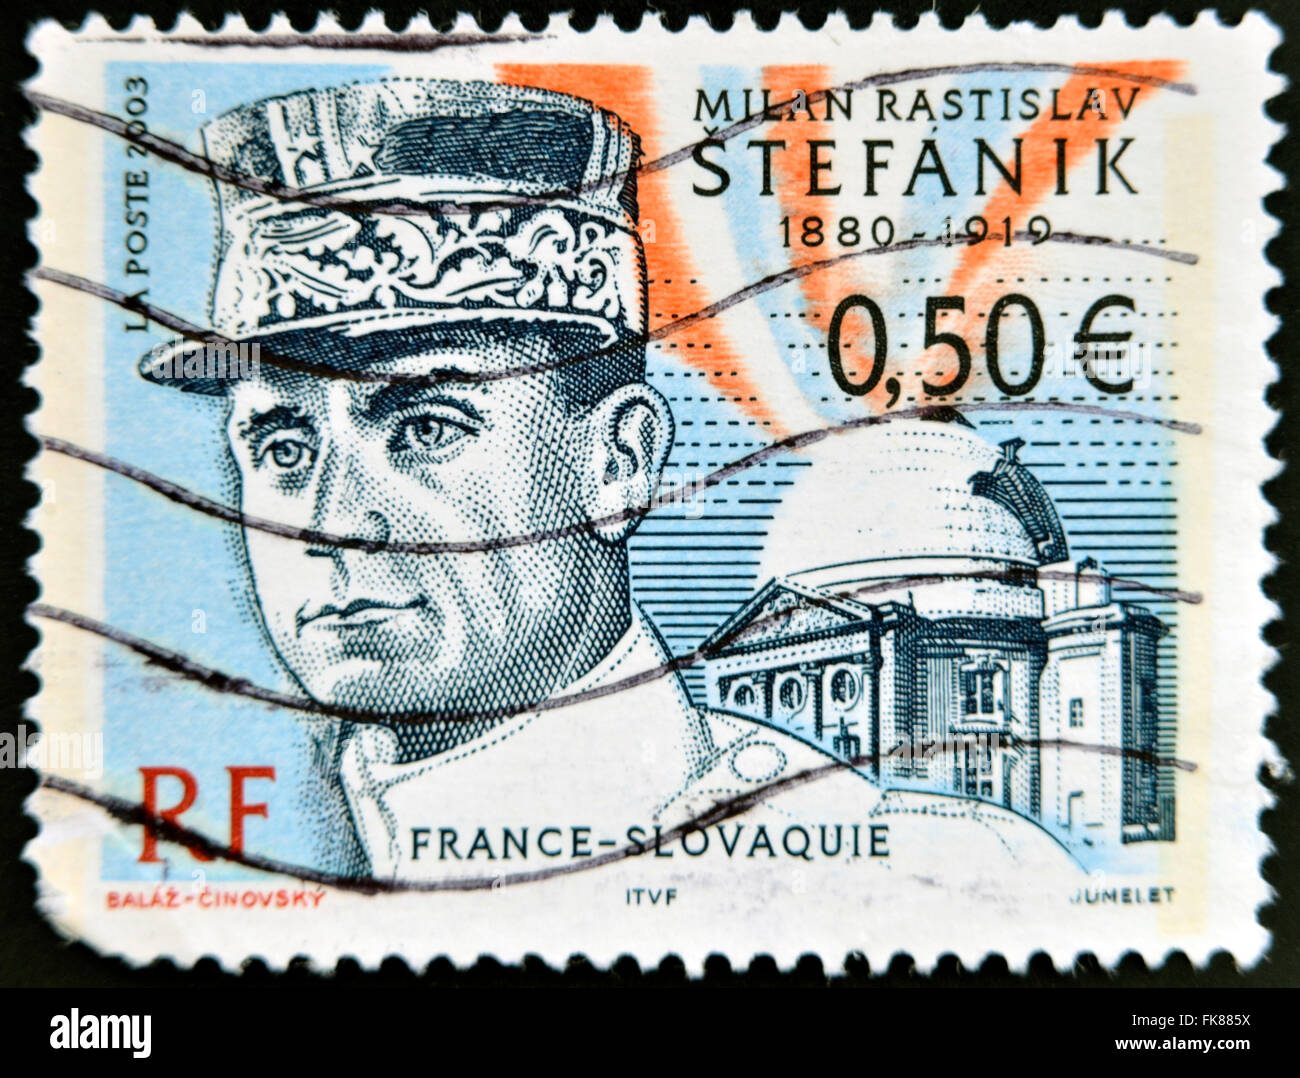 FRANCE - circa 2003 : timbres en France montre Stefanik, vers 2003 Banque D'Images